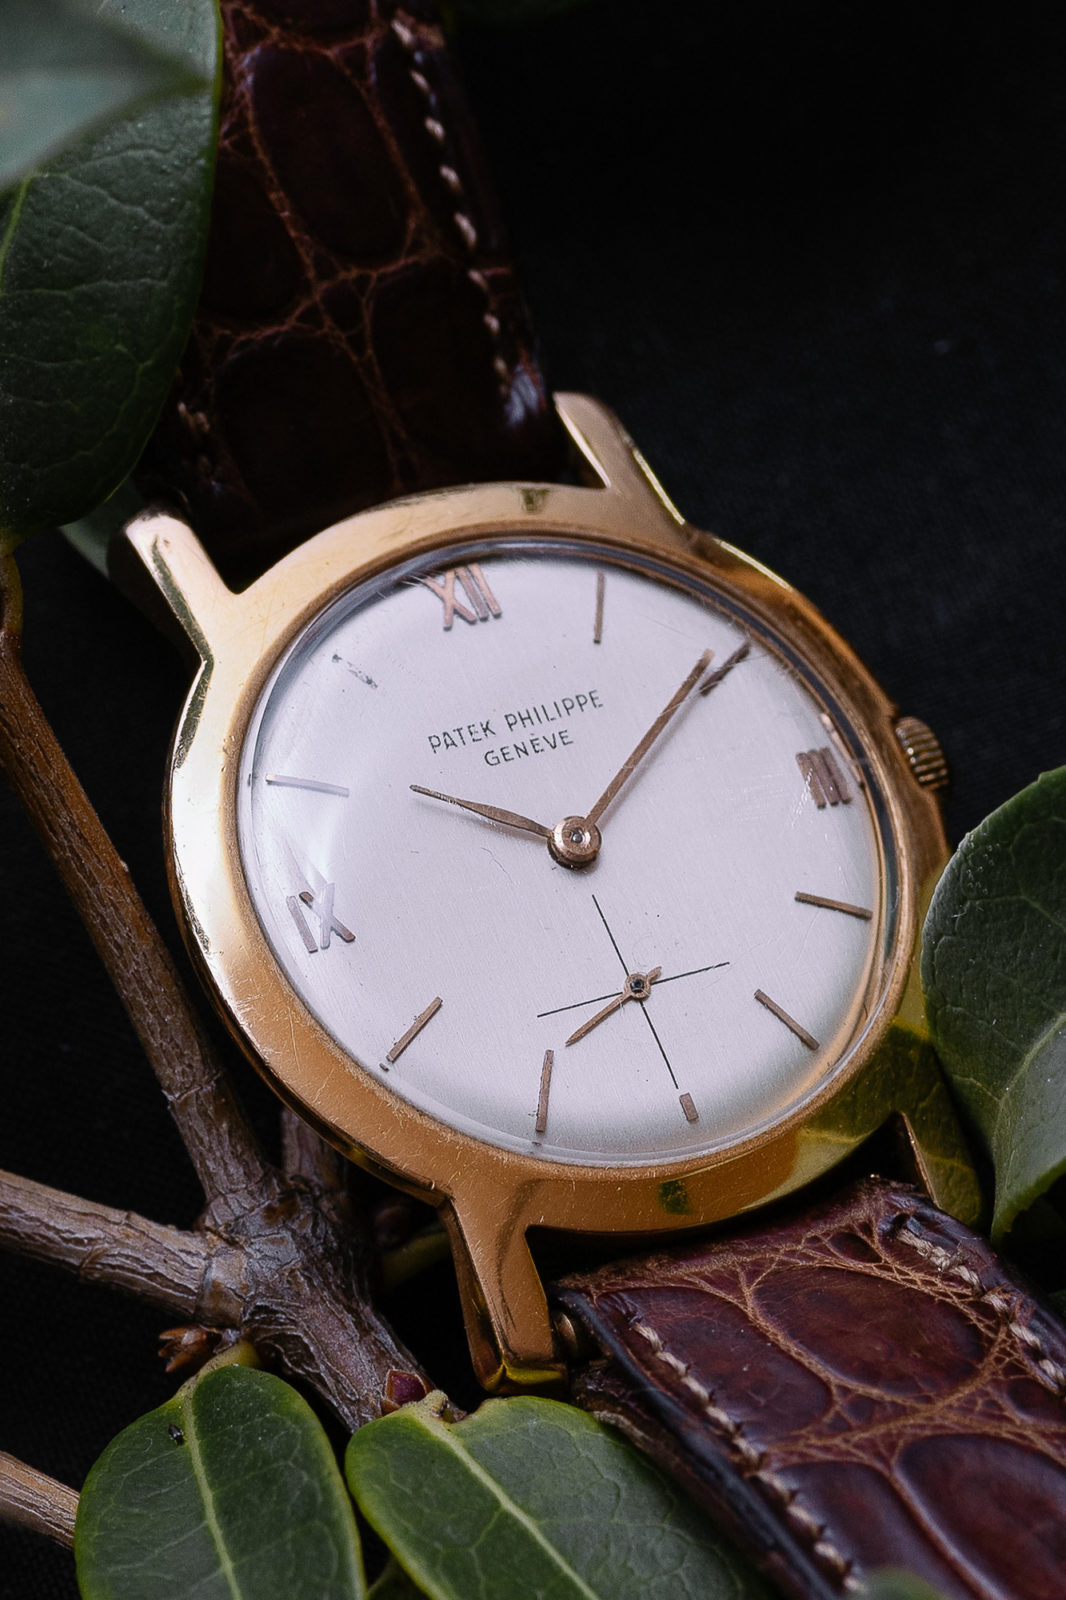 Patek Philippe 2506 - Aguttes vente de montres de collection du jeudi 10 décembre